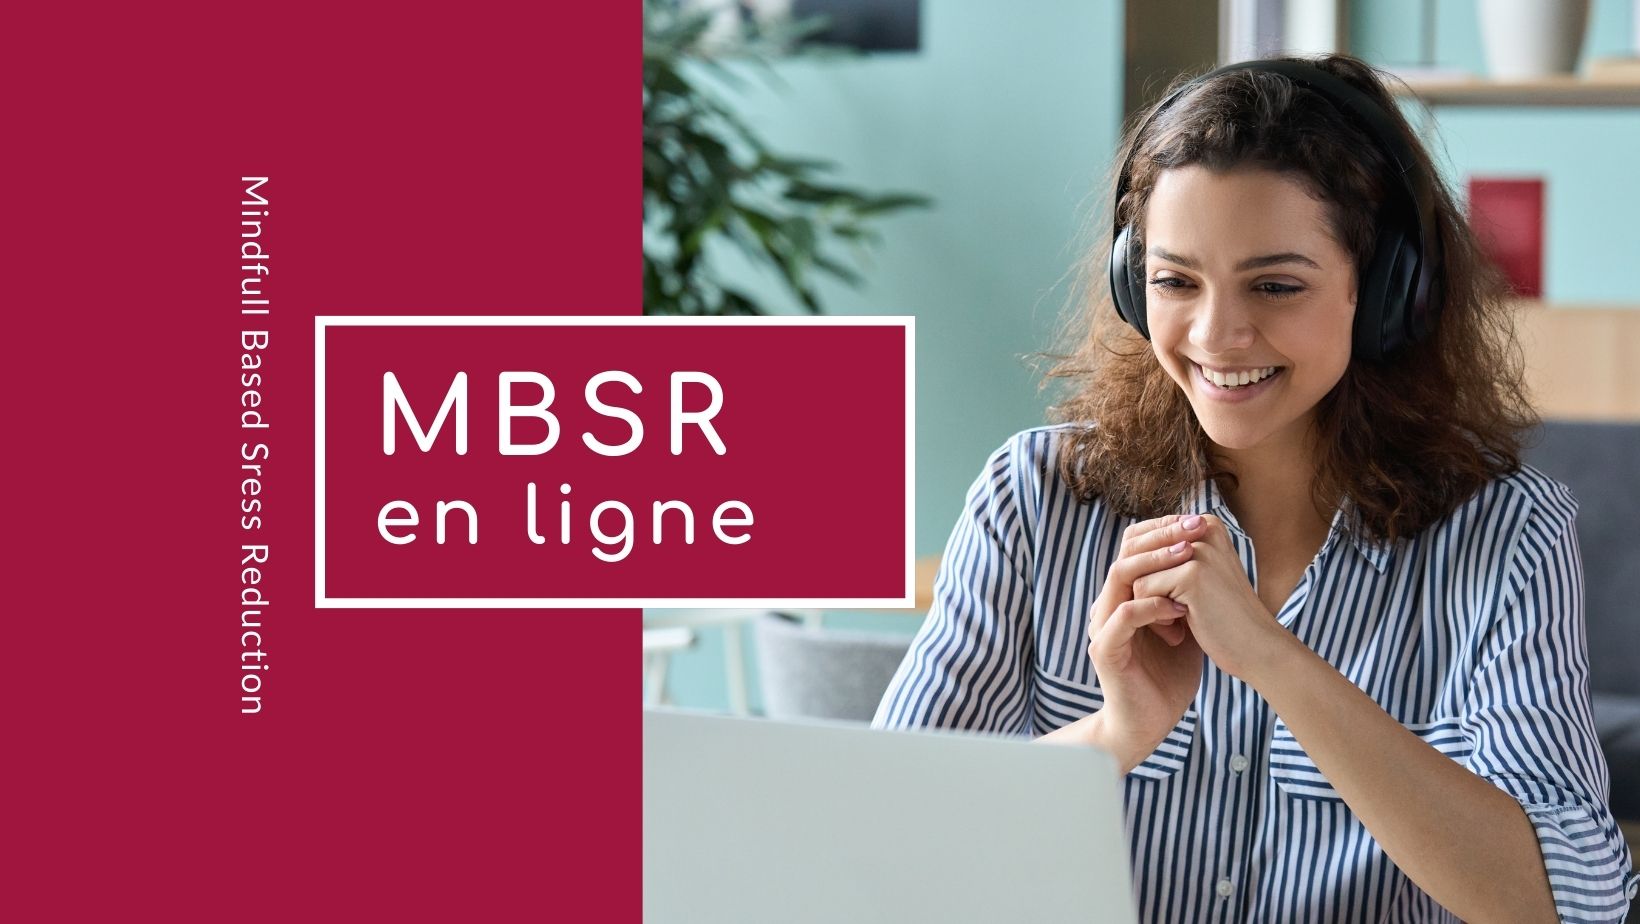 Programme MBSR en ligne avec Stéphane Offort